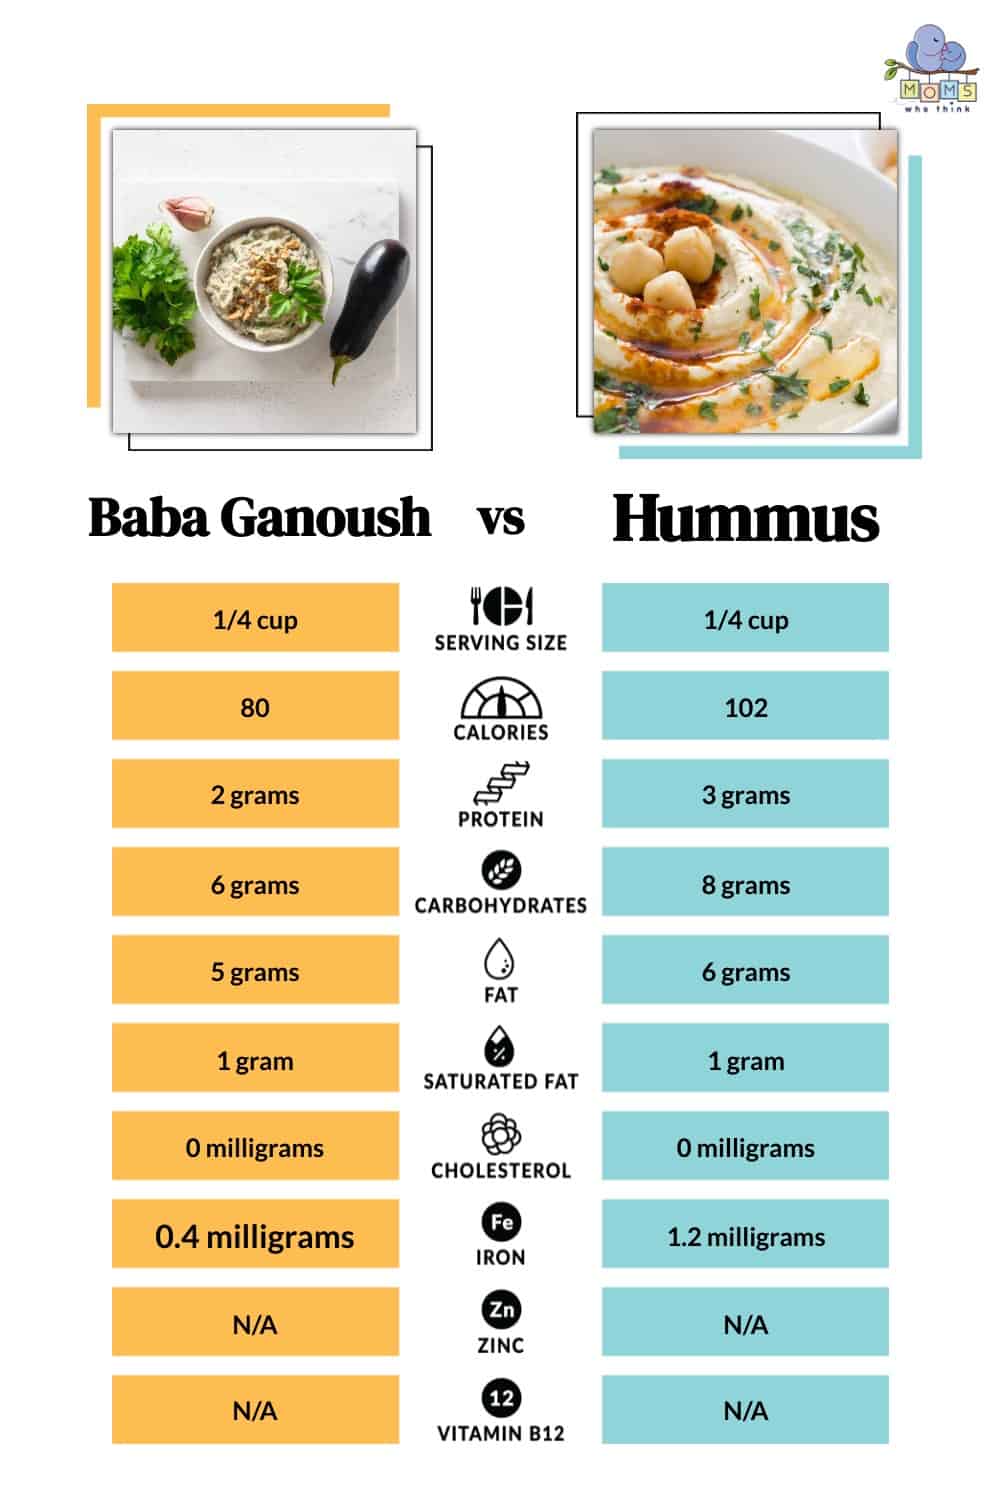 Baba Ganoush vs Hummus Calories, Fats, Proteins